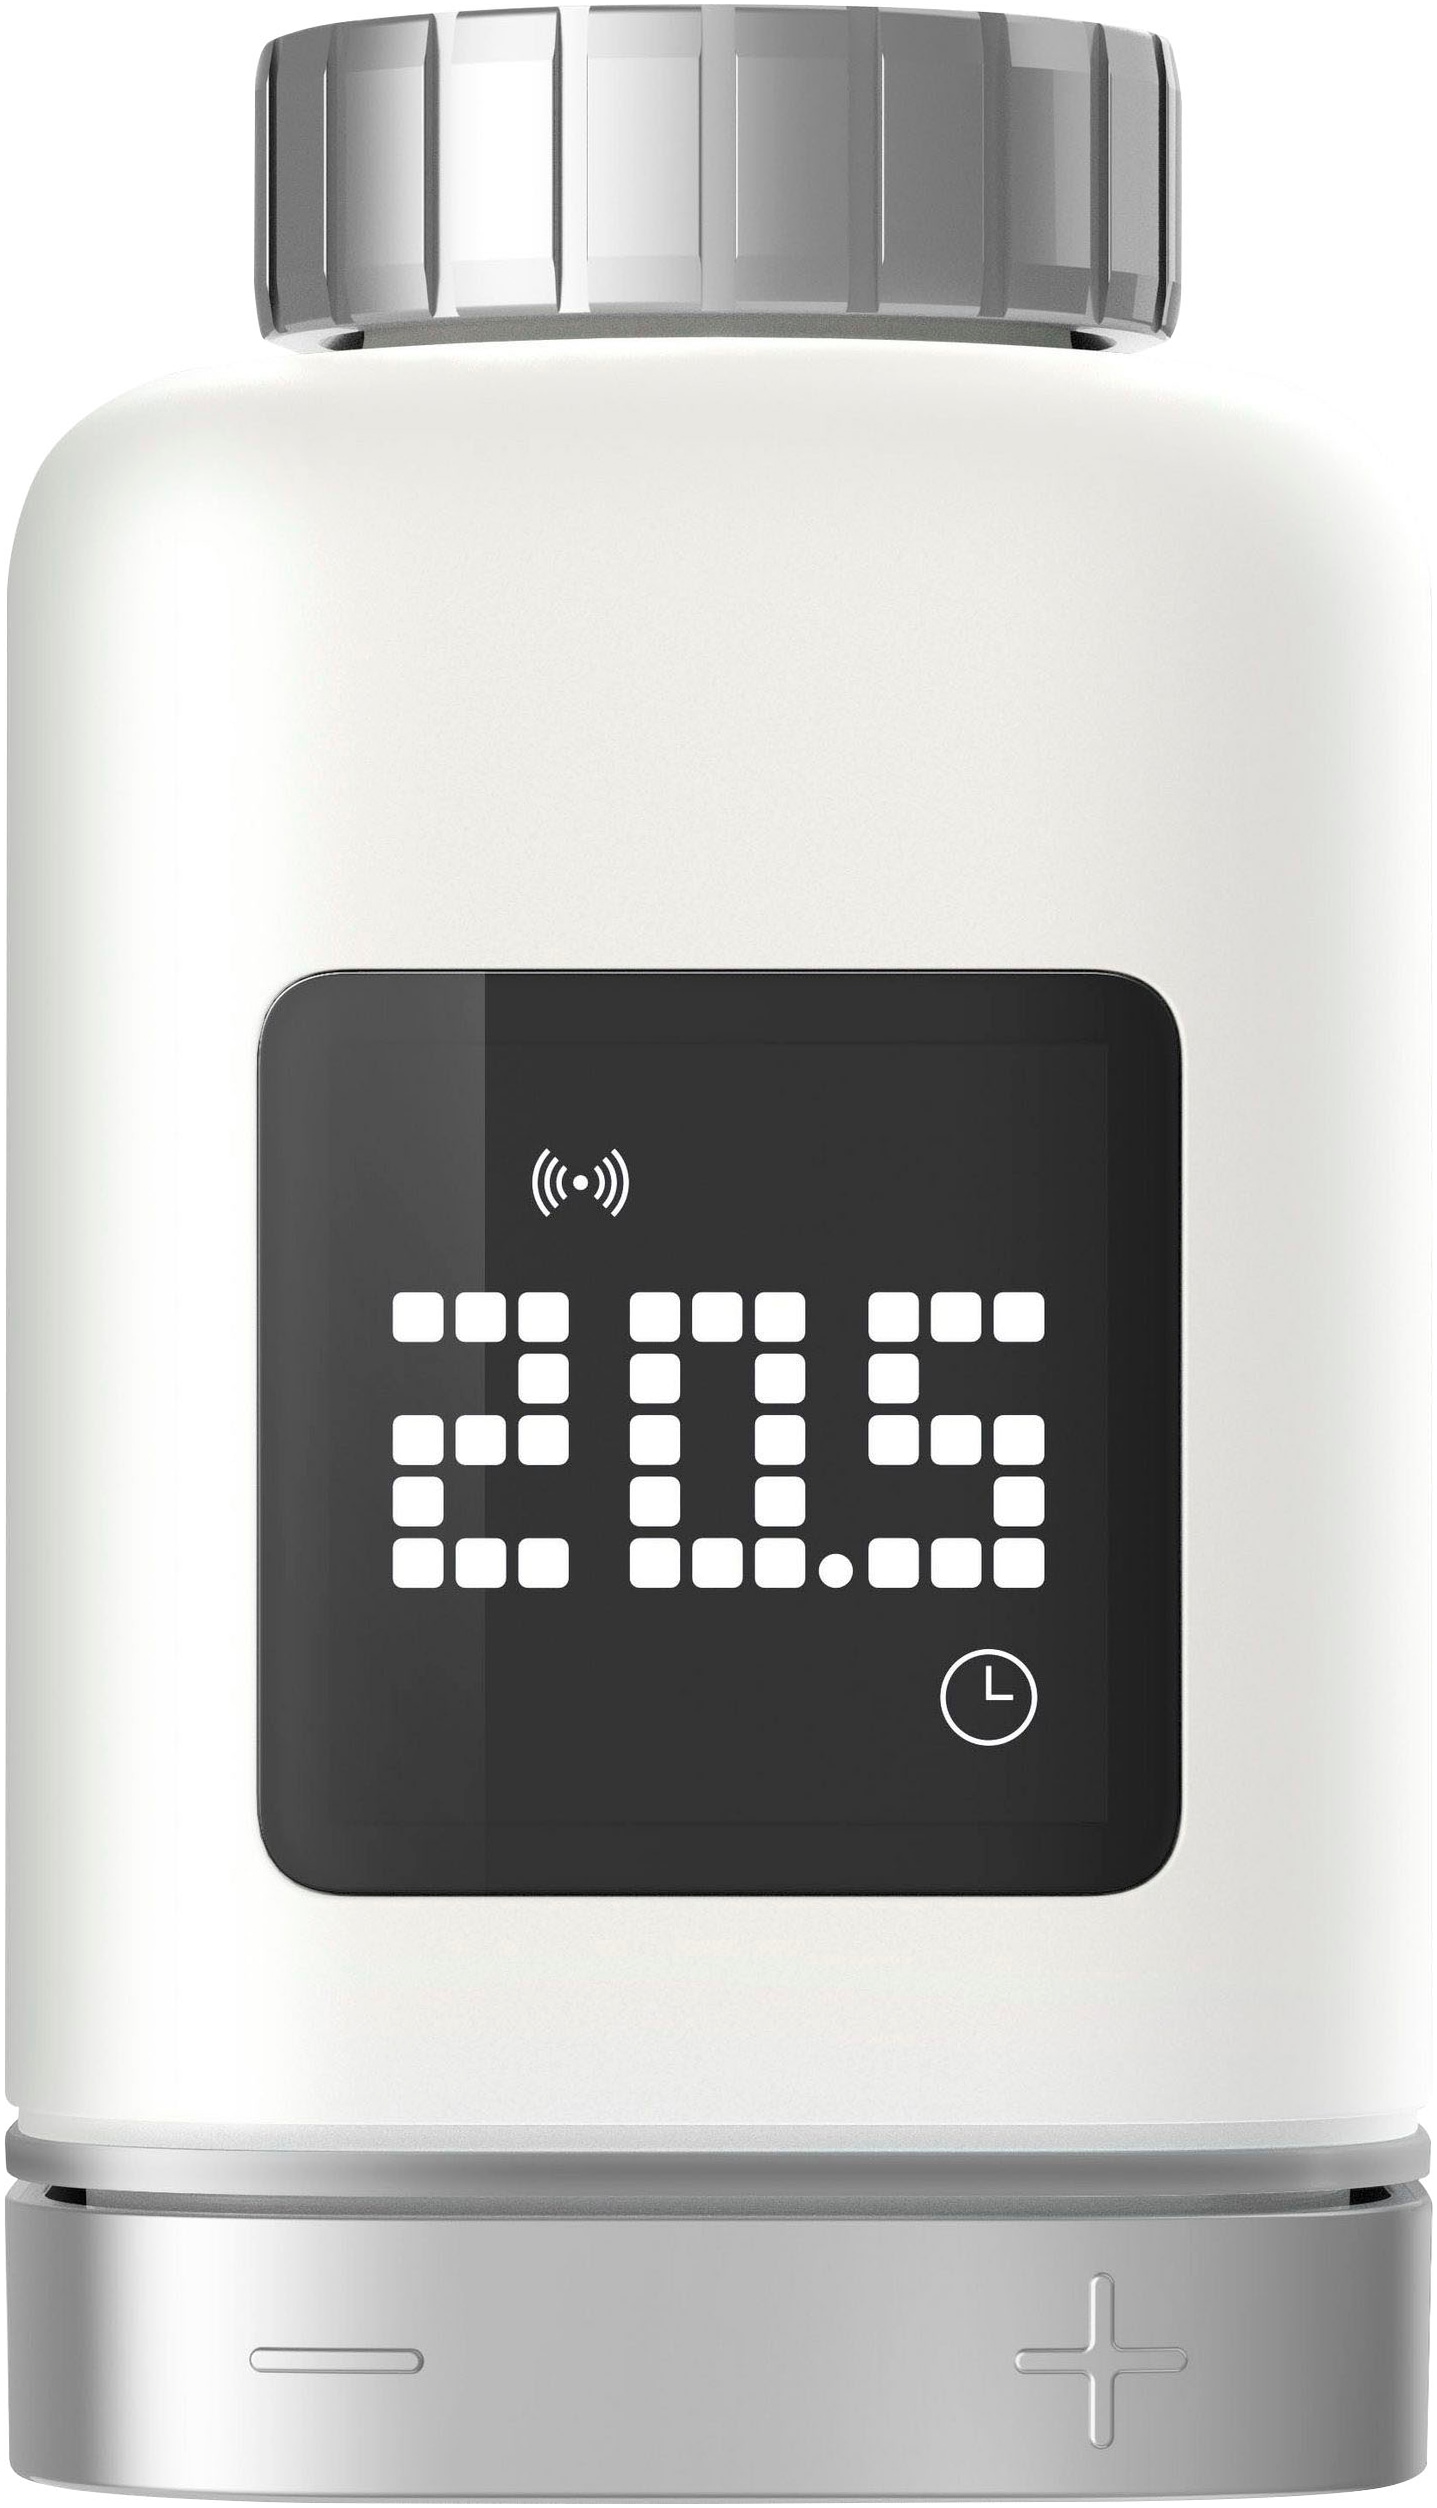 BOSCH Heizkörperthermostat »Smart Home Heizkörper-Thermostat II 4er-Set«